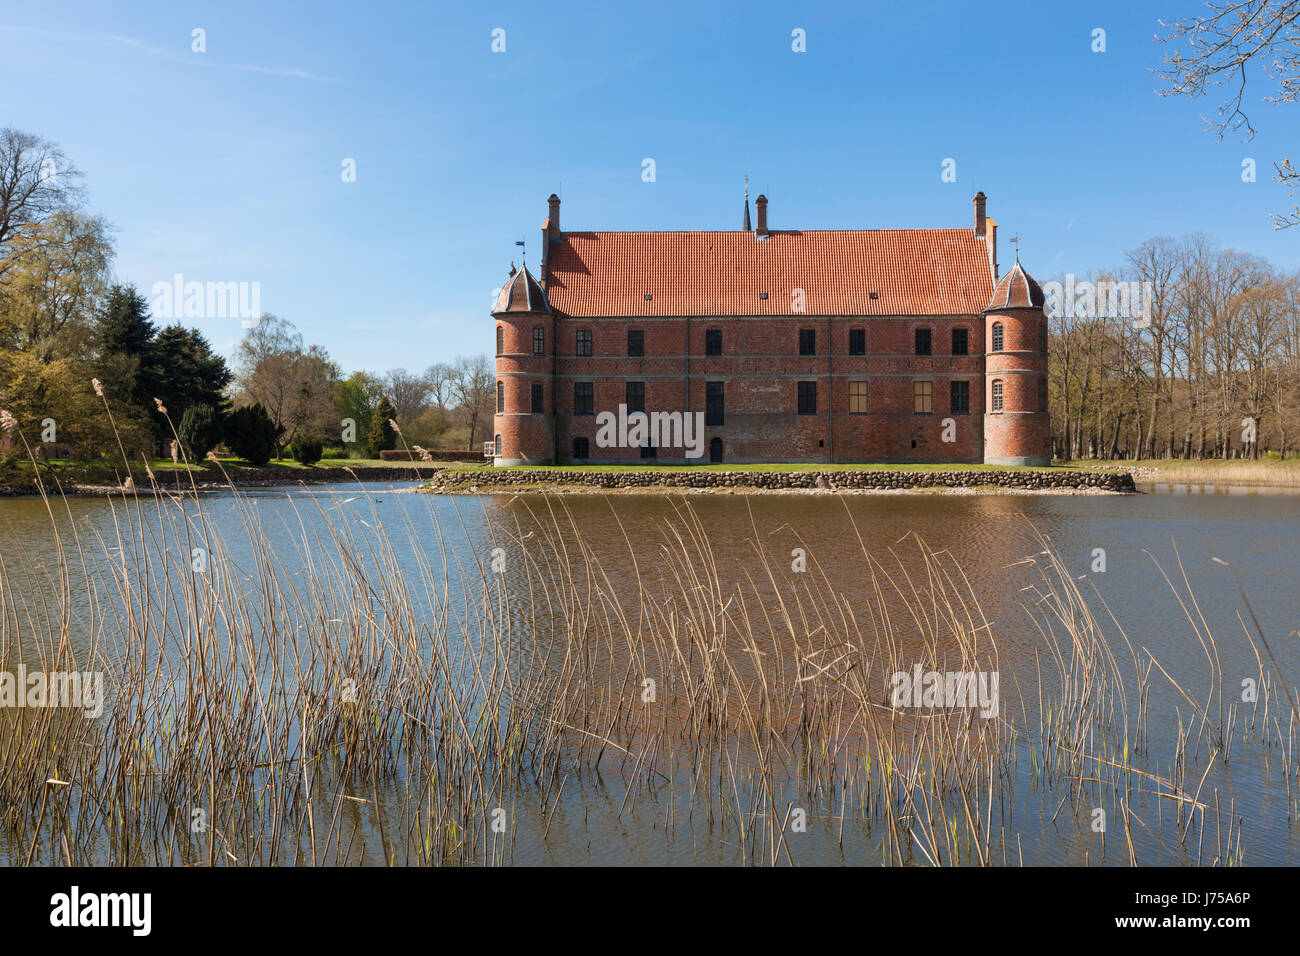 Rosenholm water castle near Hornslet, Jutland, Denmark Stock Photo